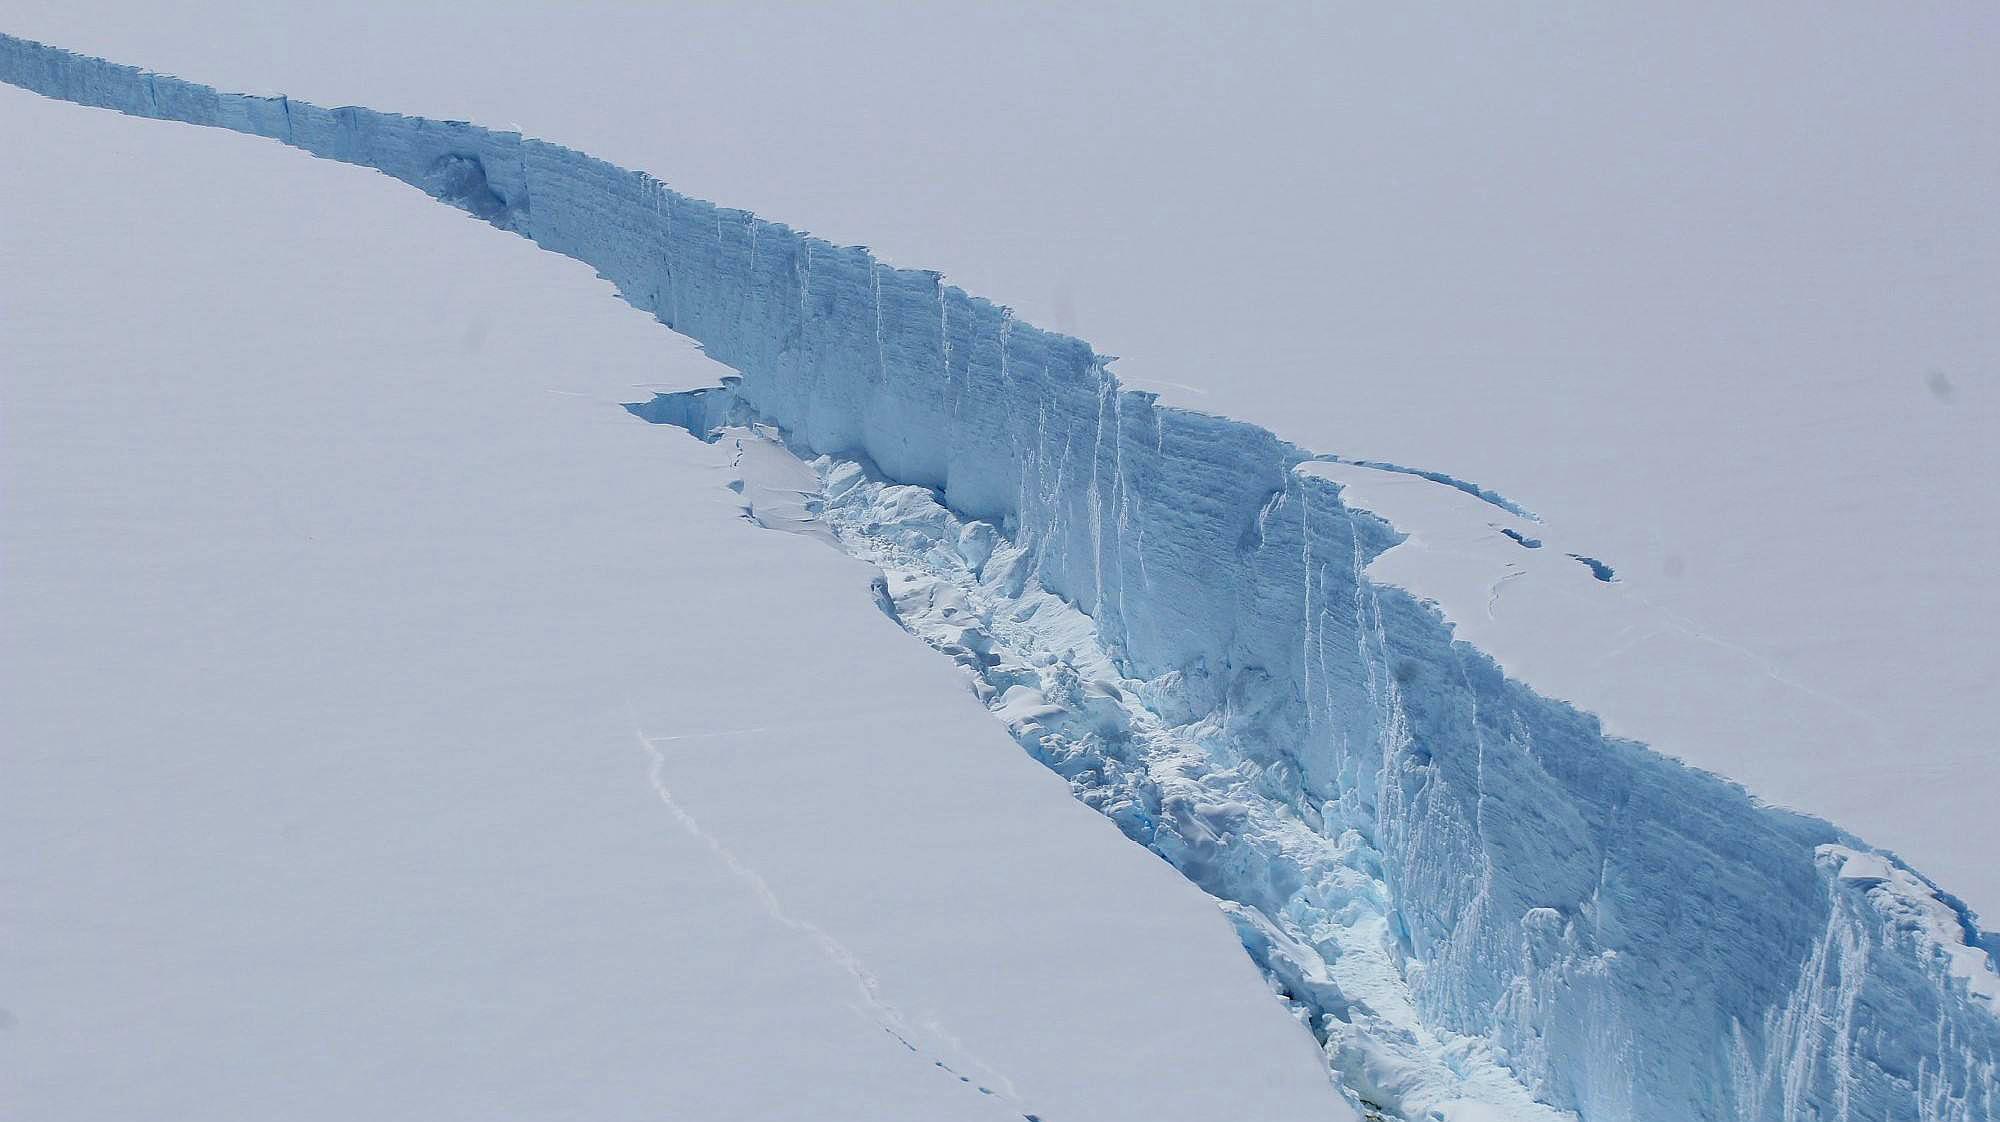 美卫星最新发现:南极出现巨大裂缝,或致数千平方公里冰川崩坍!